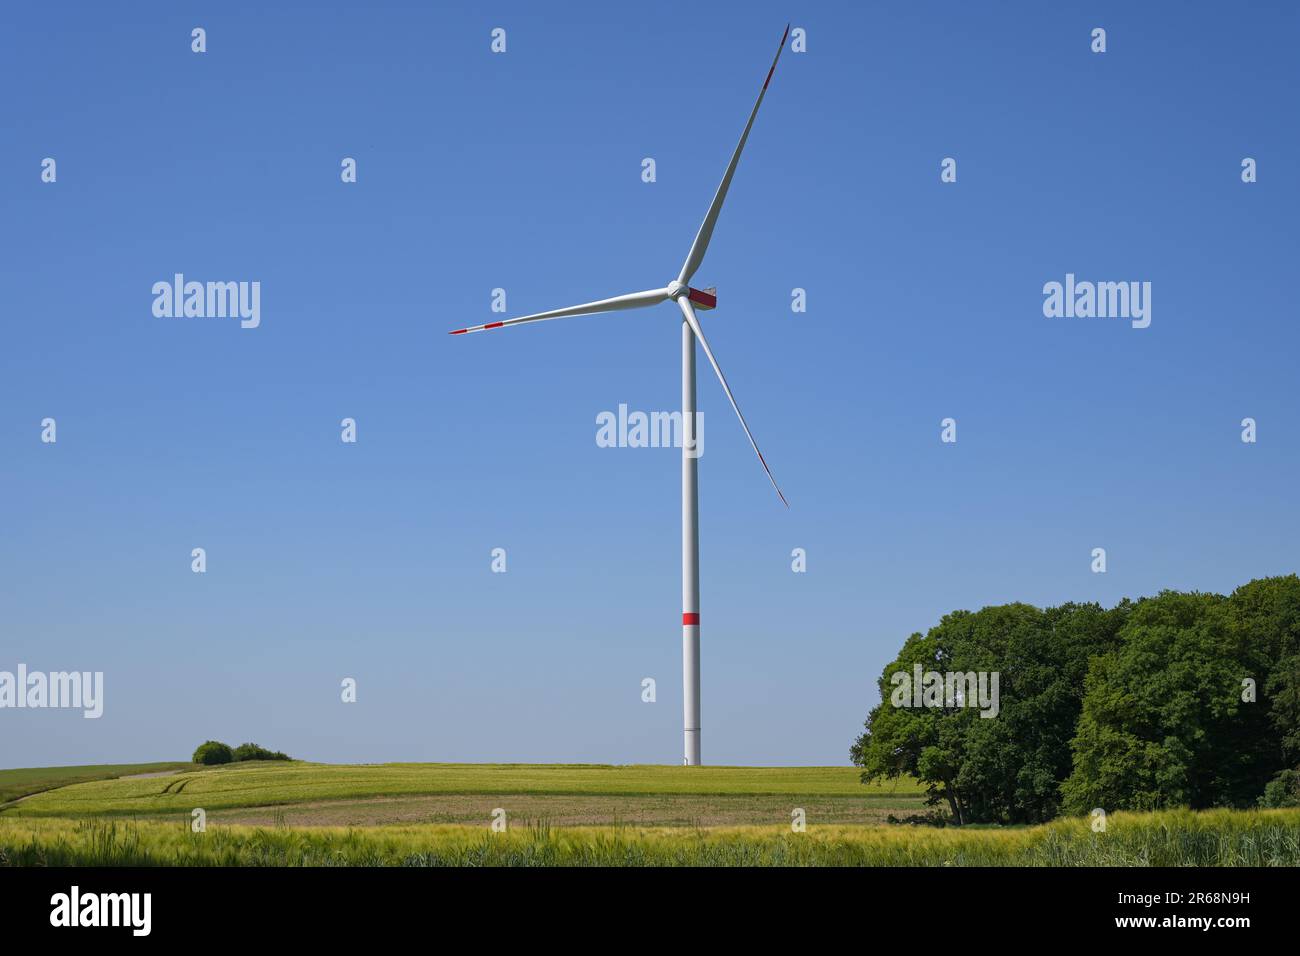 Turbina eolica alta con una torre sottile e tre pale del rotore in piedi su un campo in un paesaggio rurale contro il cielo blu, concetto di energia rinnovabile, Foto Stock